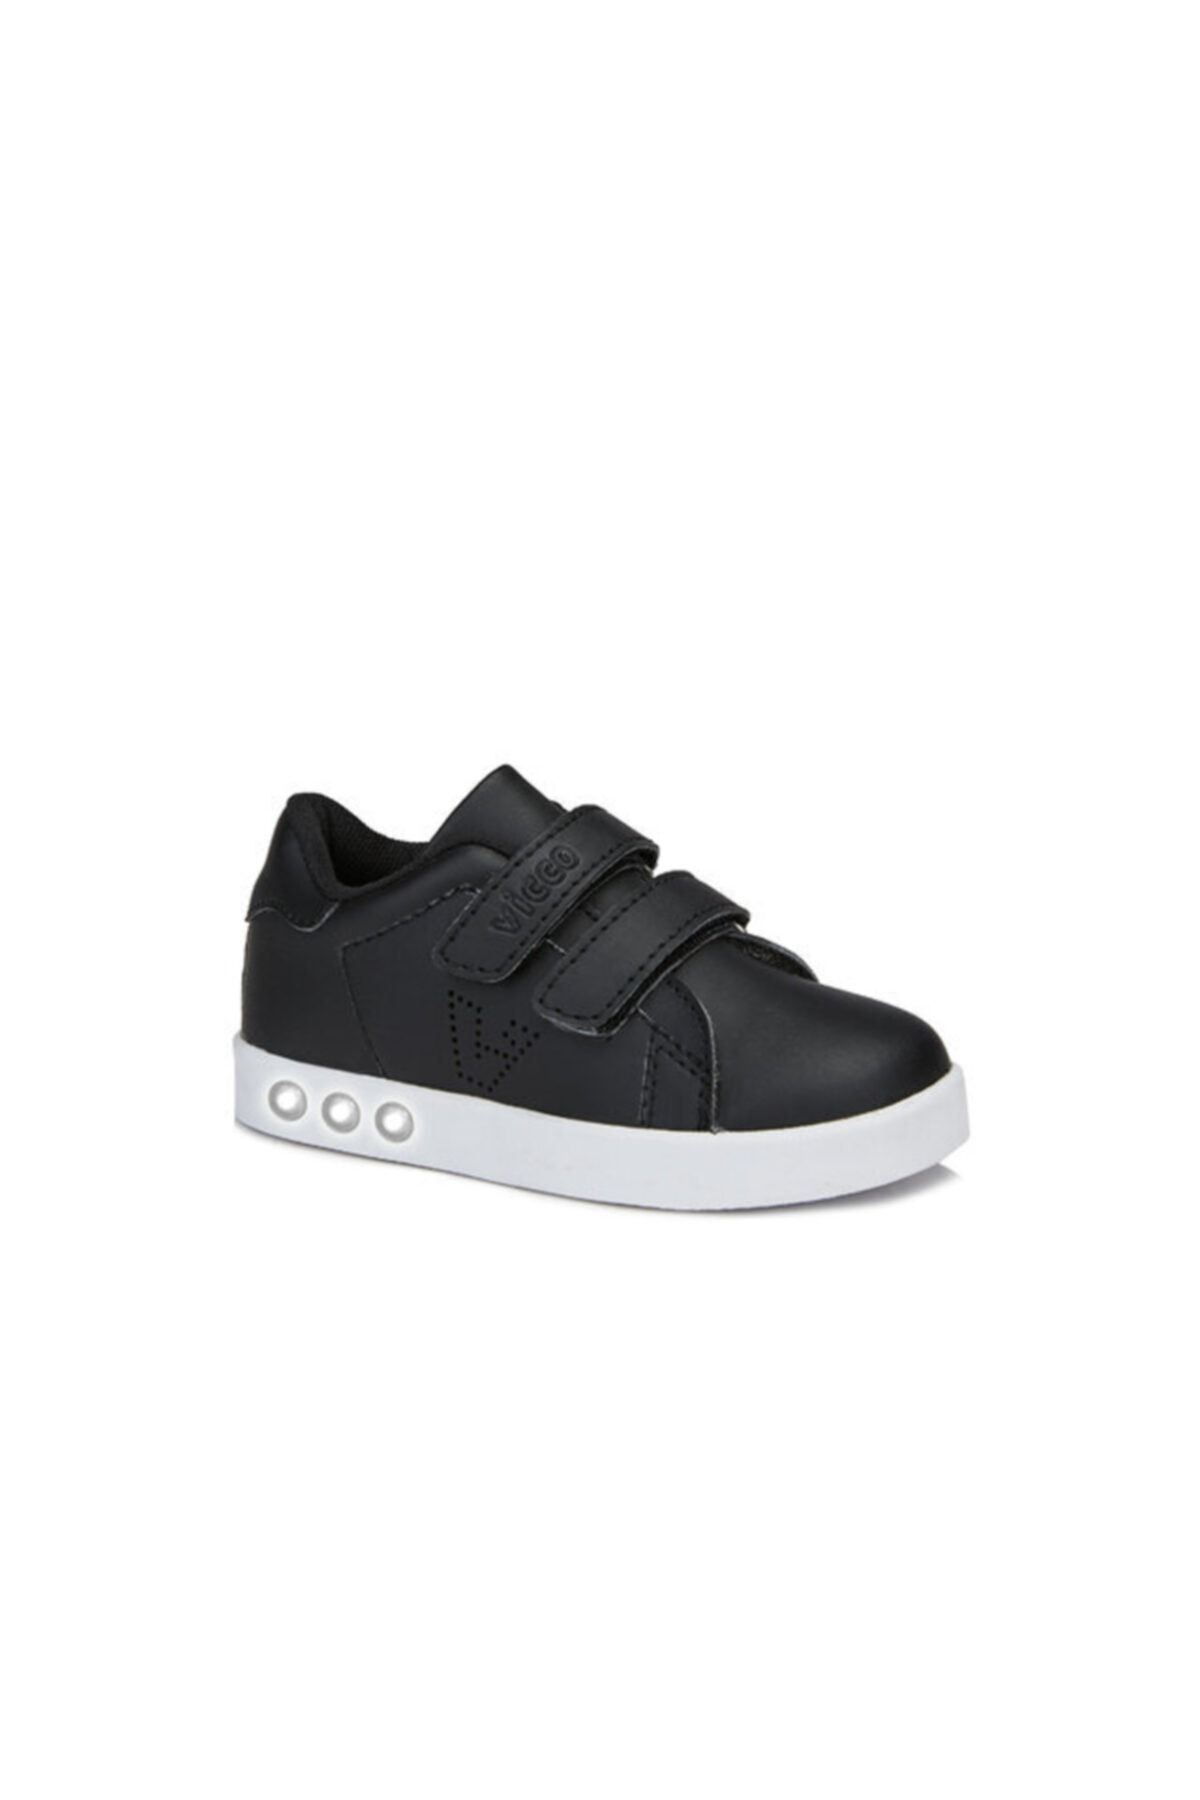 Vicco Oyo Unisex Siyah/beyaz Spor Ayakkabı (313.b19k.100-0211)